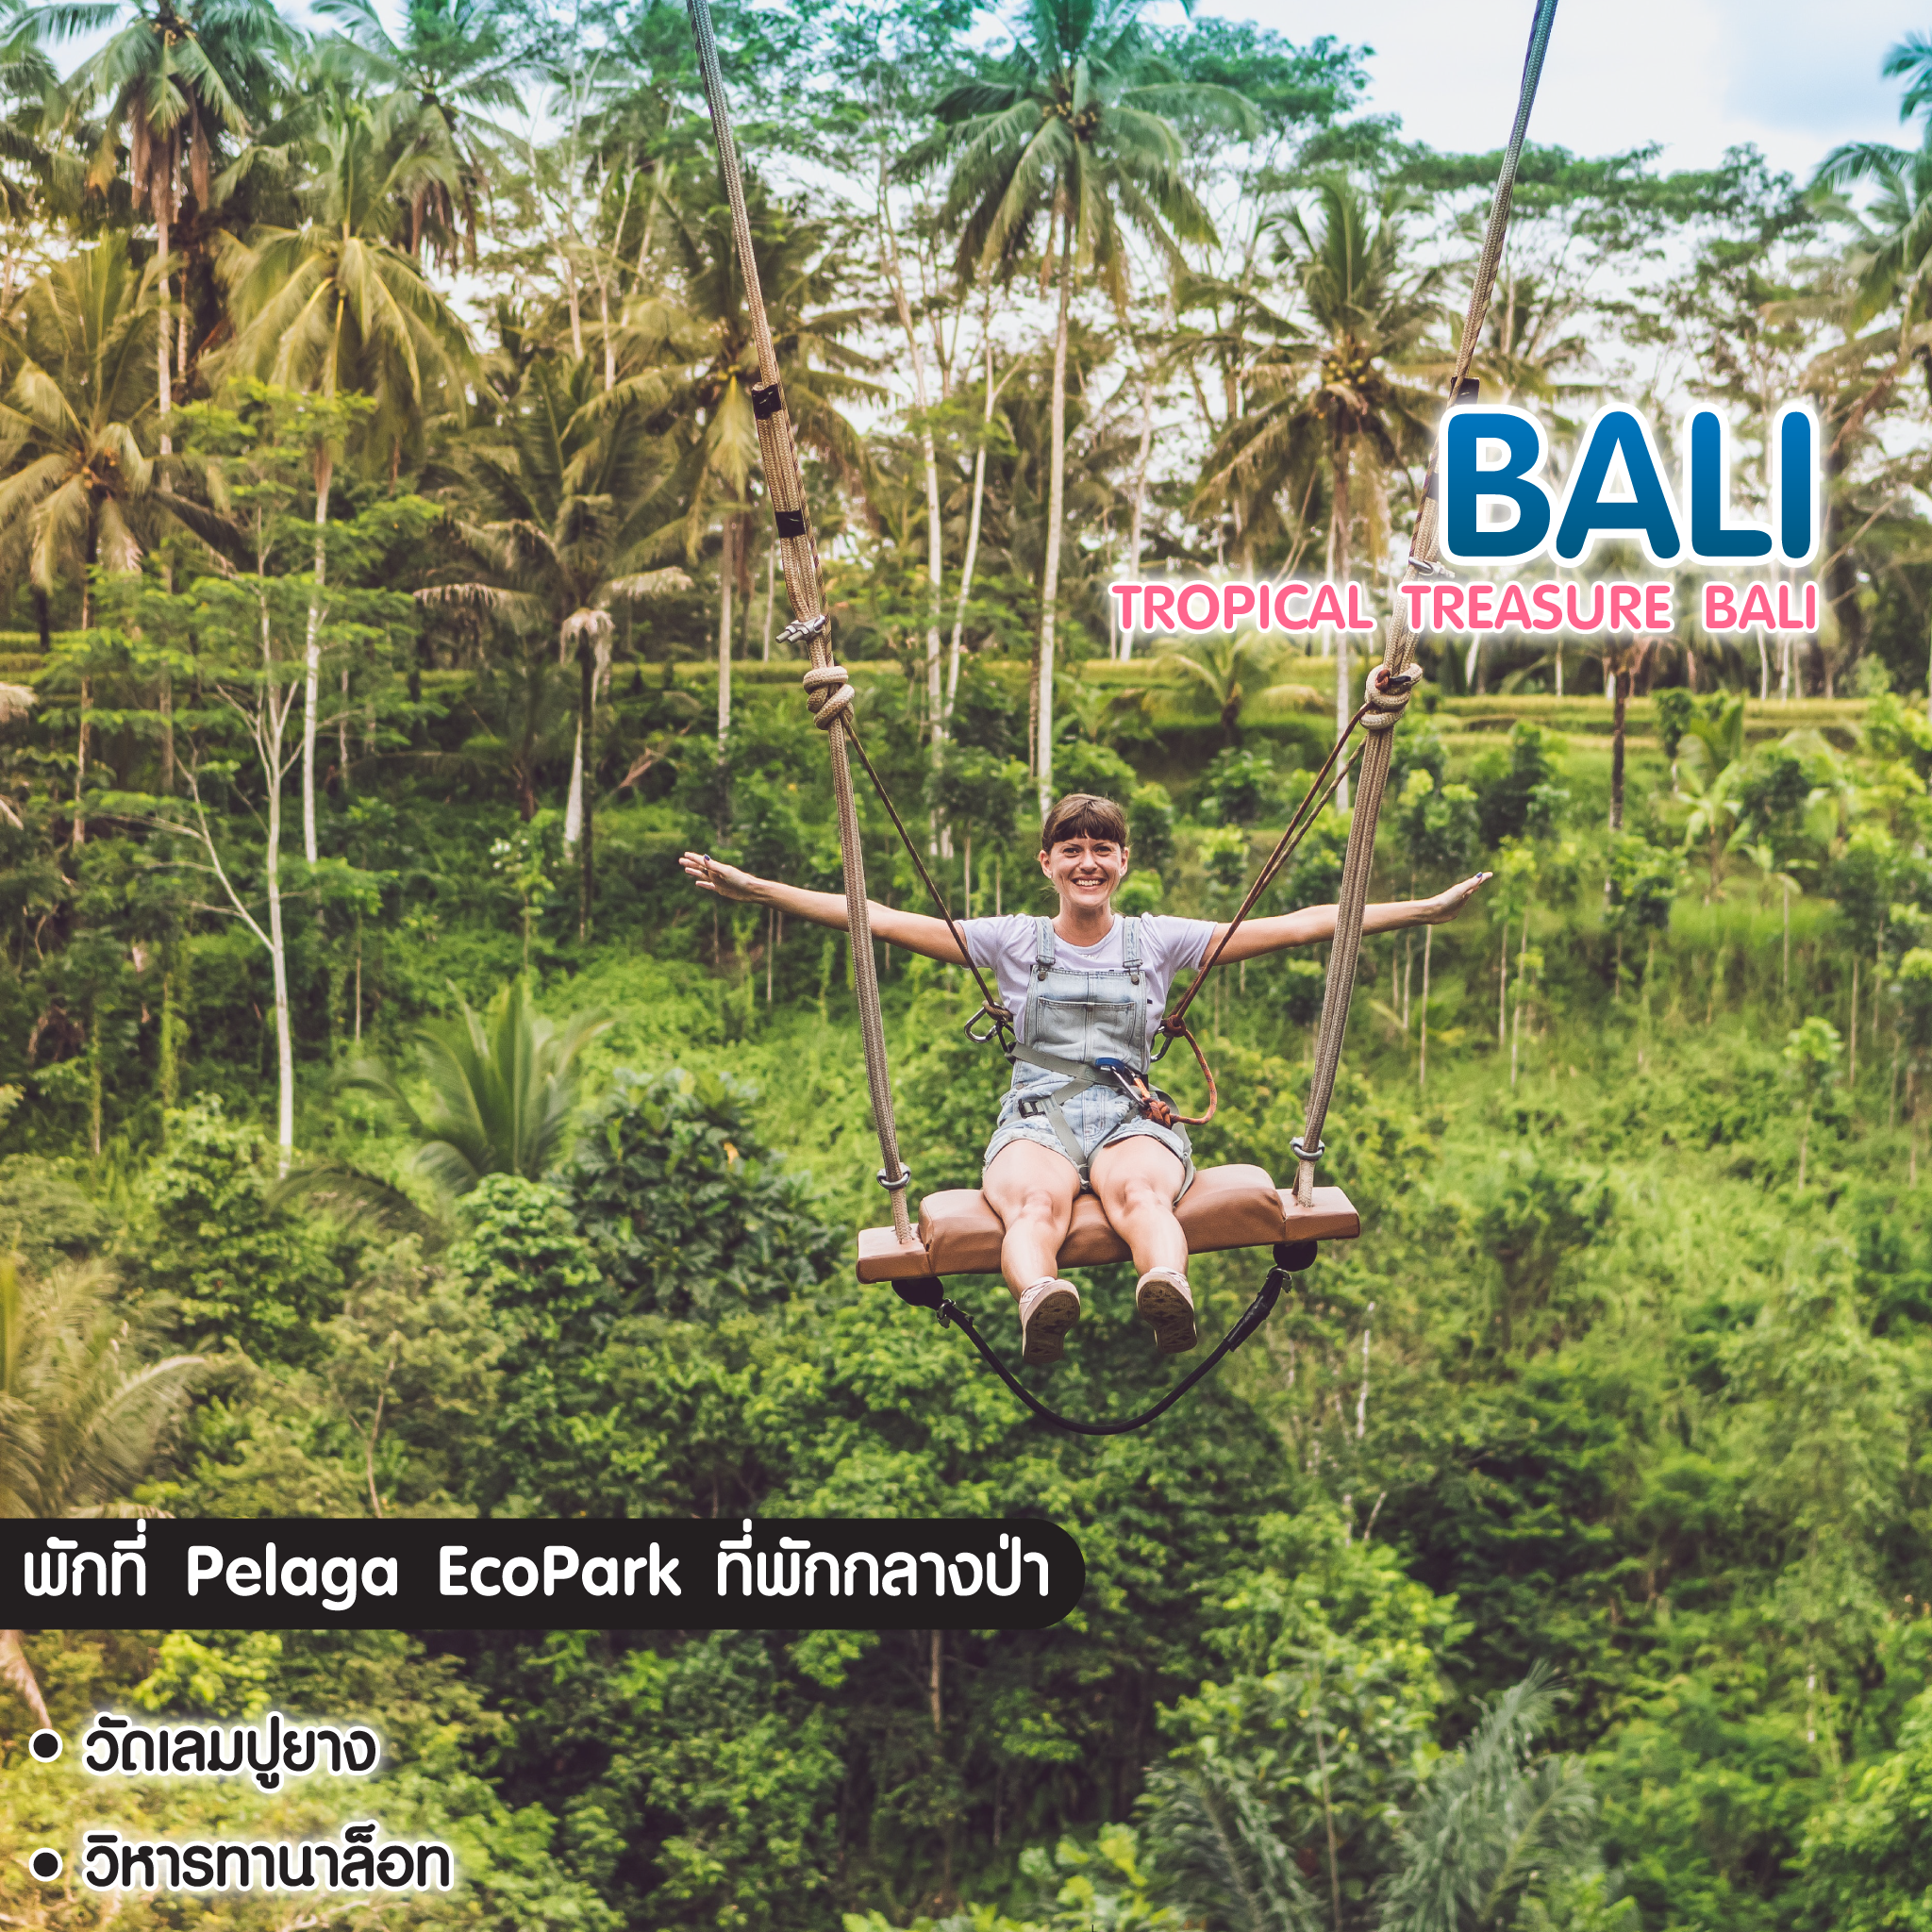 ทัวร์บาหลี Tropical Treasure Bali 